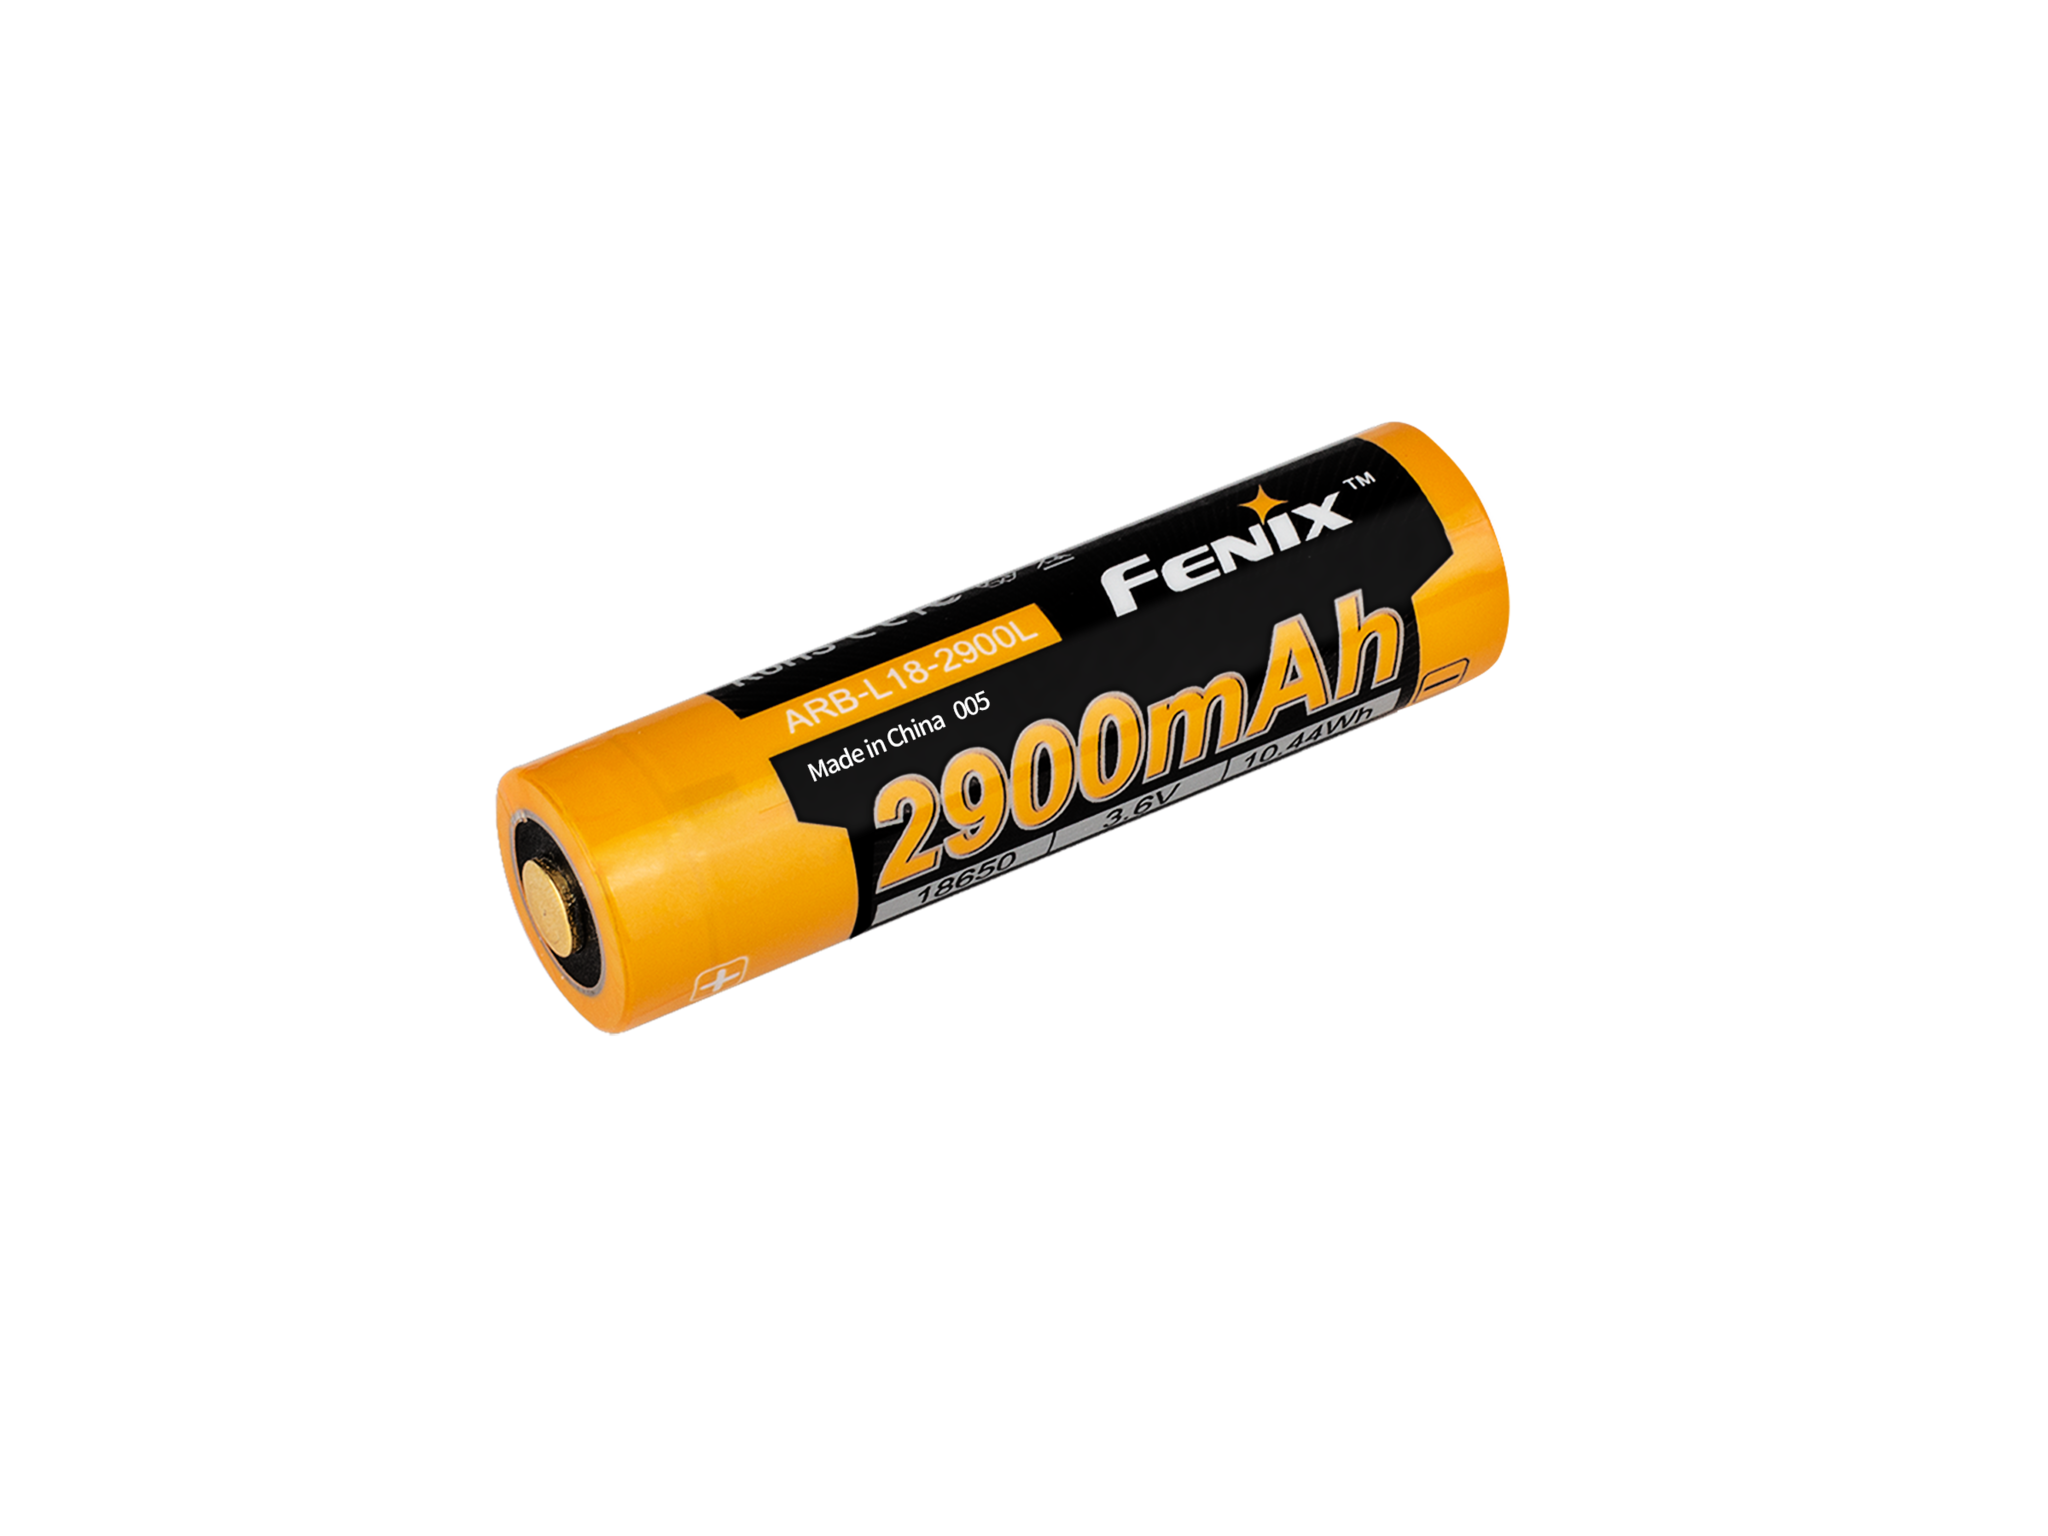 Аккумулятор 18650 Fenix 3500U mAh с разъемом для USB - фото 4